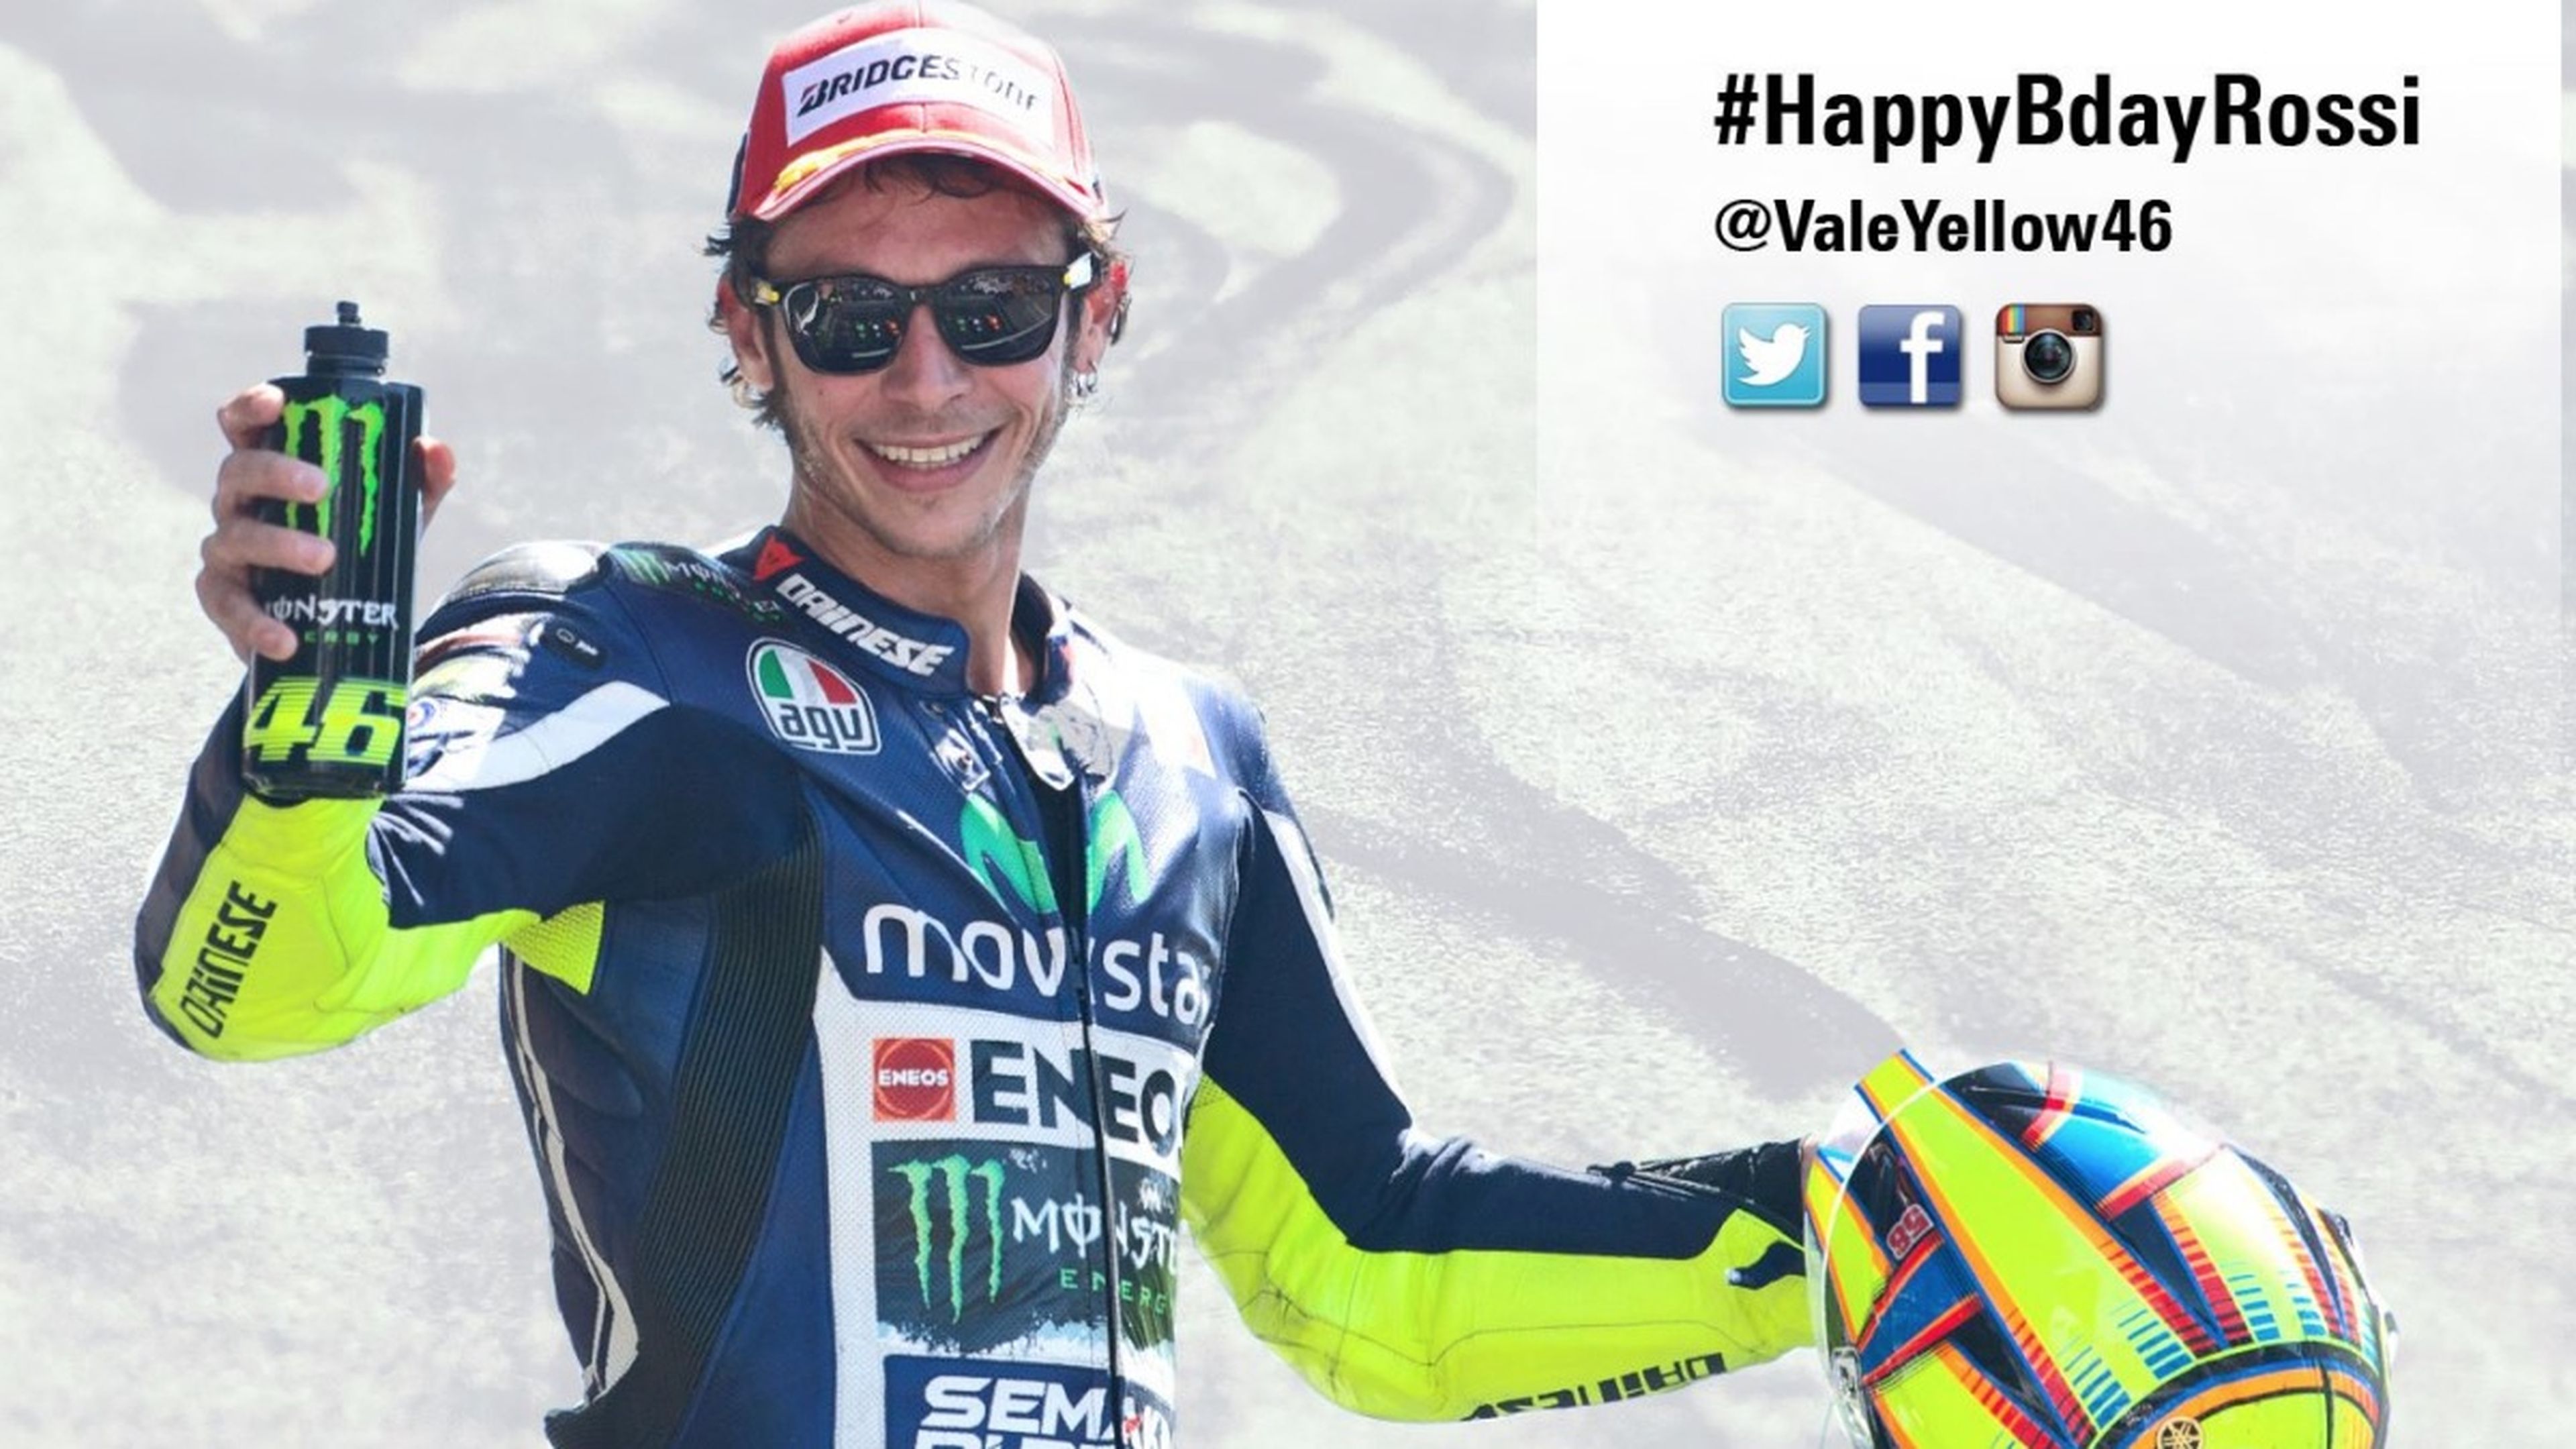 Llega el cumpleaños de Valentino Rossi. ¡Felicidades!